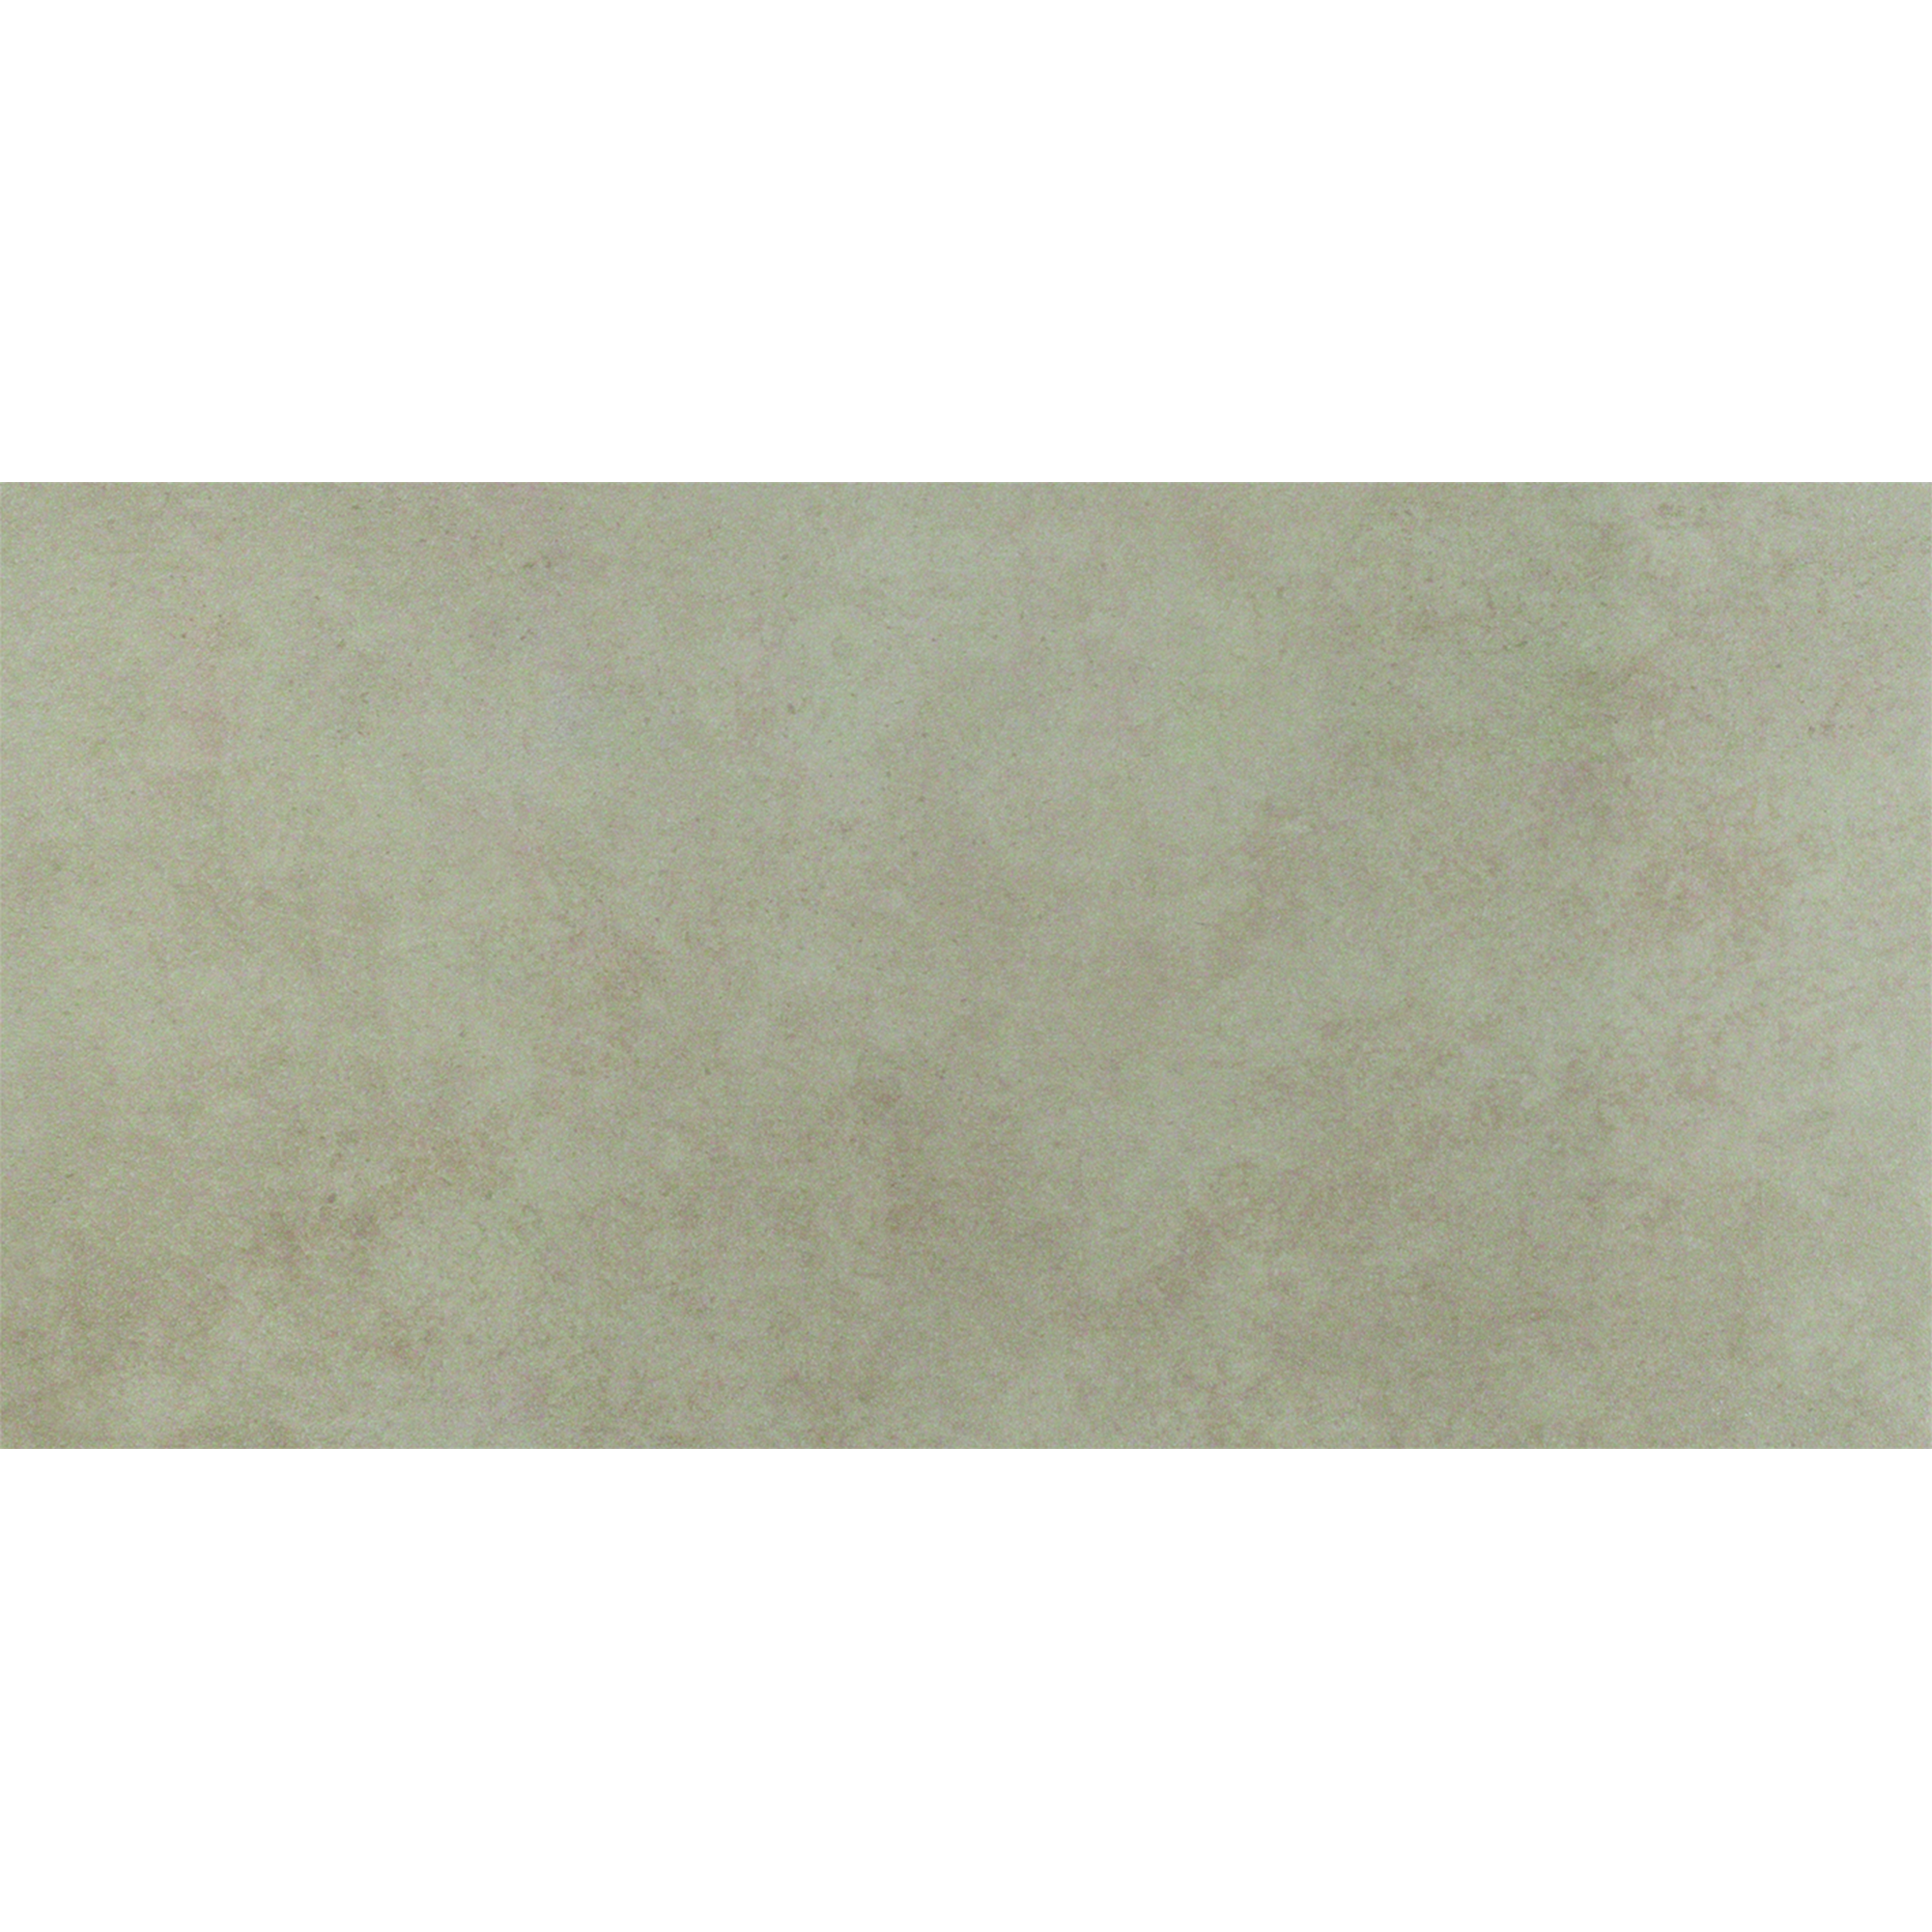 Bodenfliese 'Harrison' Feinsteinzeug beige 30 x 60 cm + product picture